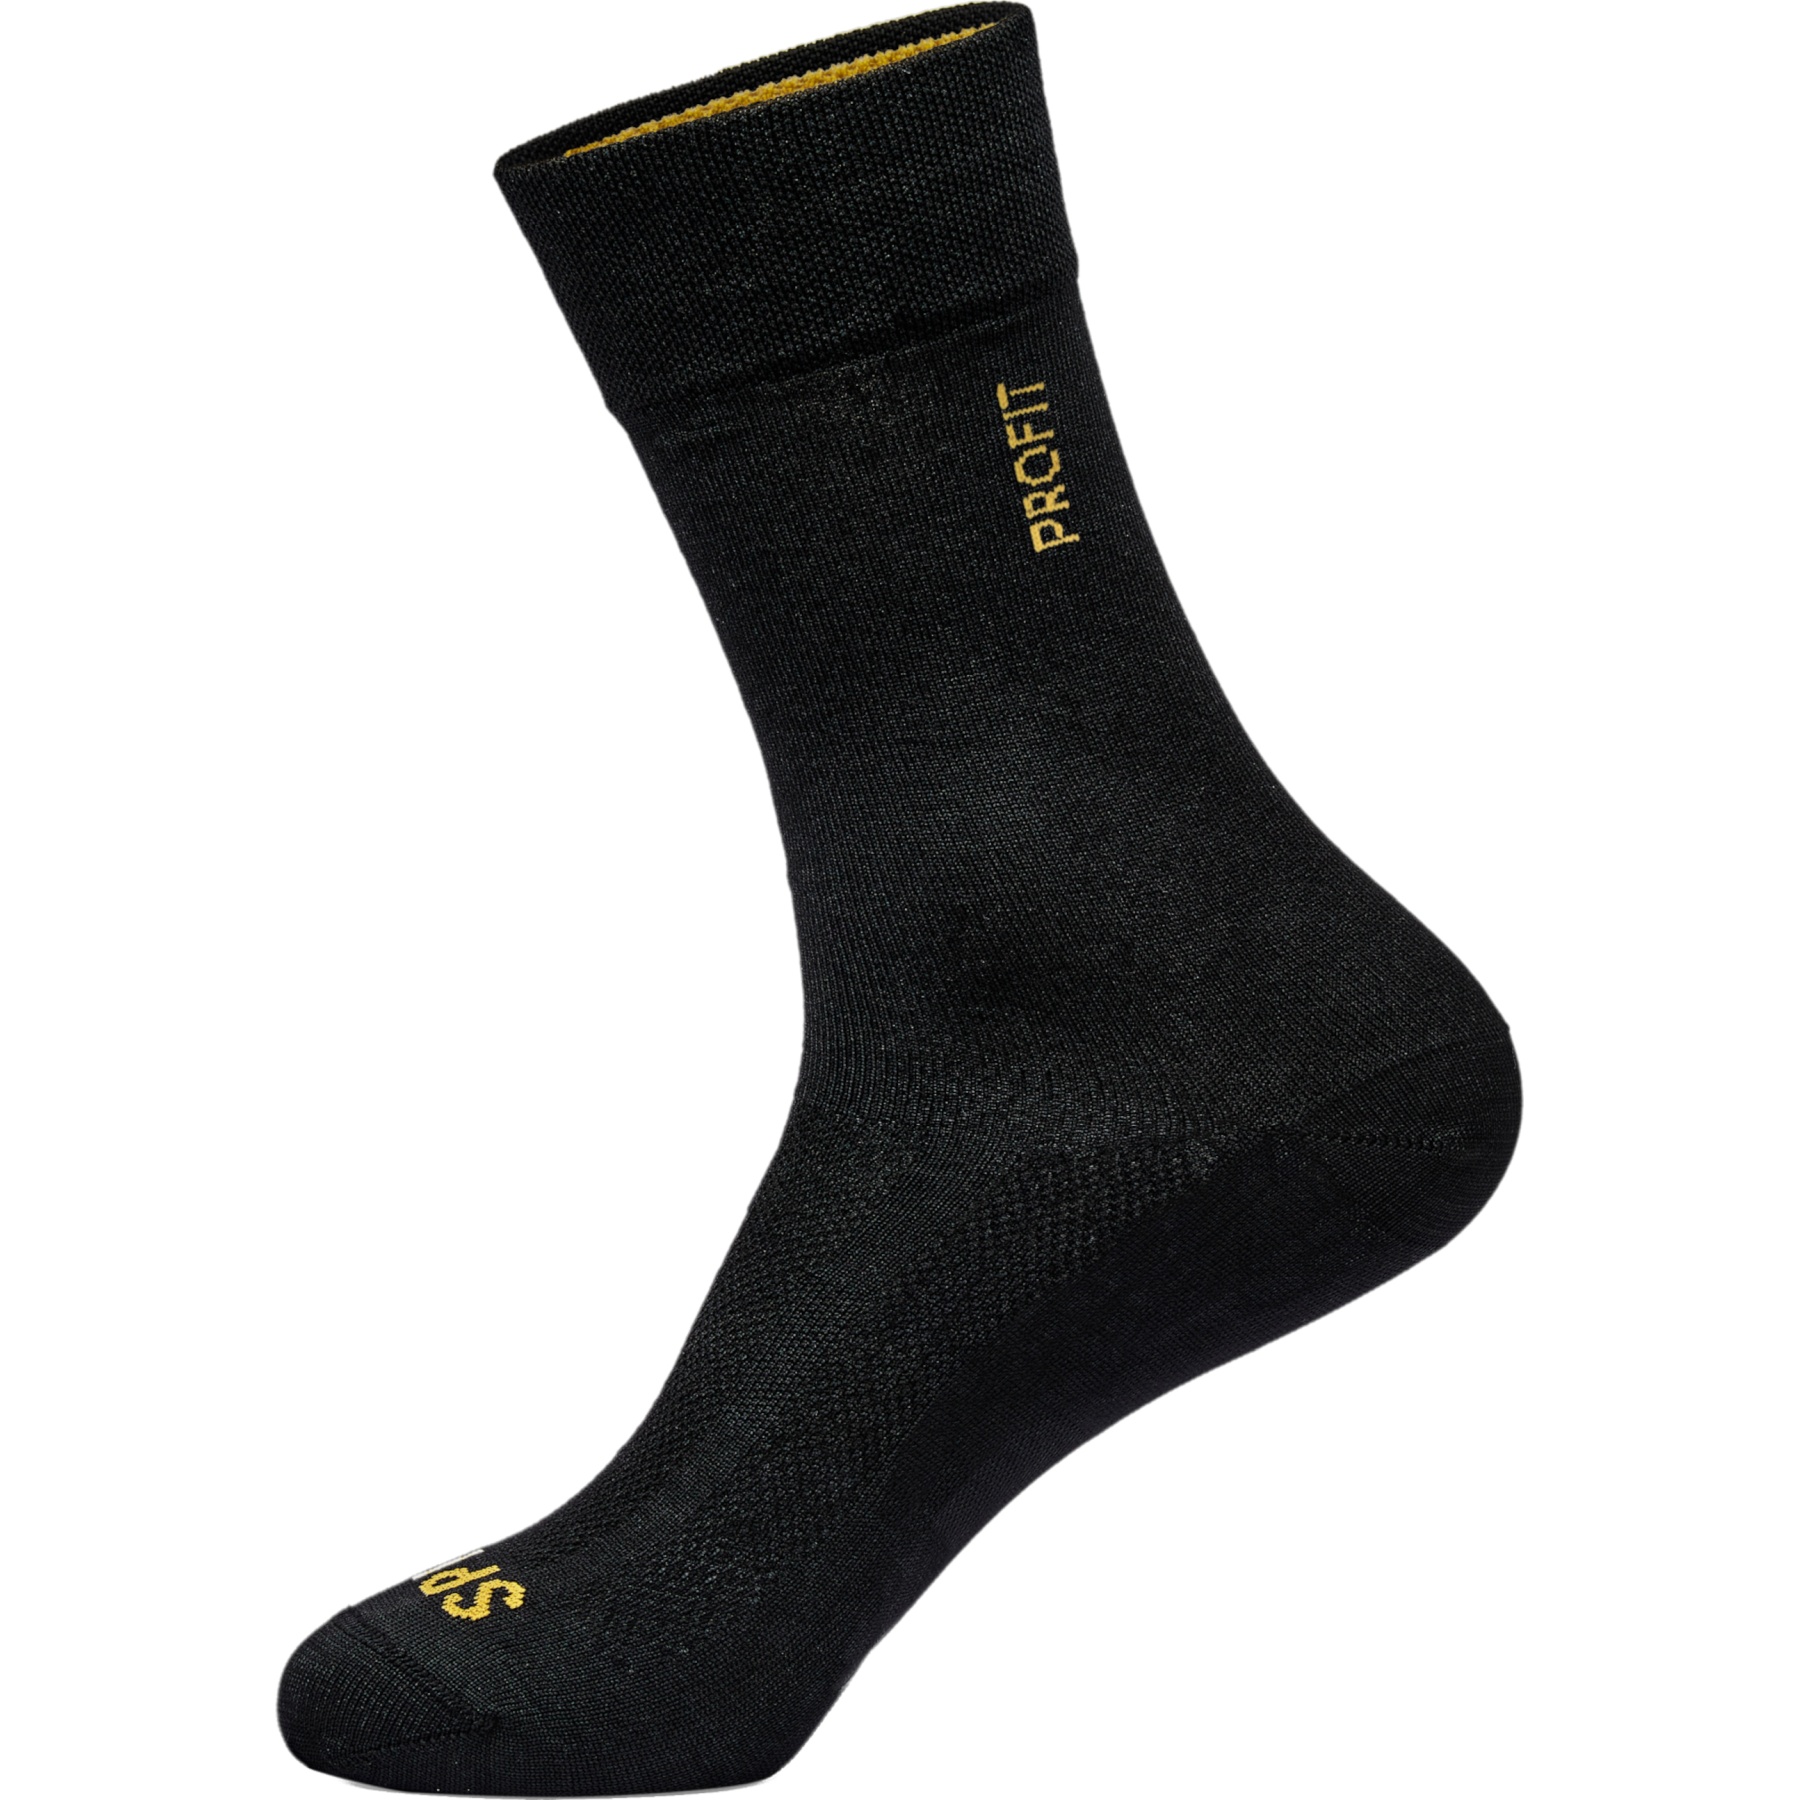 Produktbild von Spiuk PROFIT Long Summer Socken - schwarz